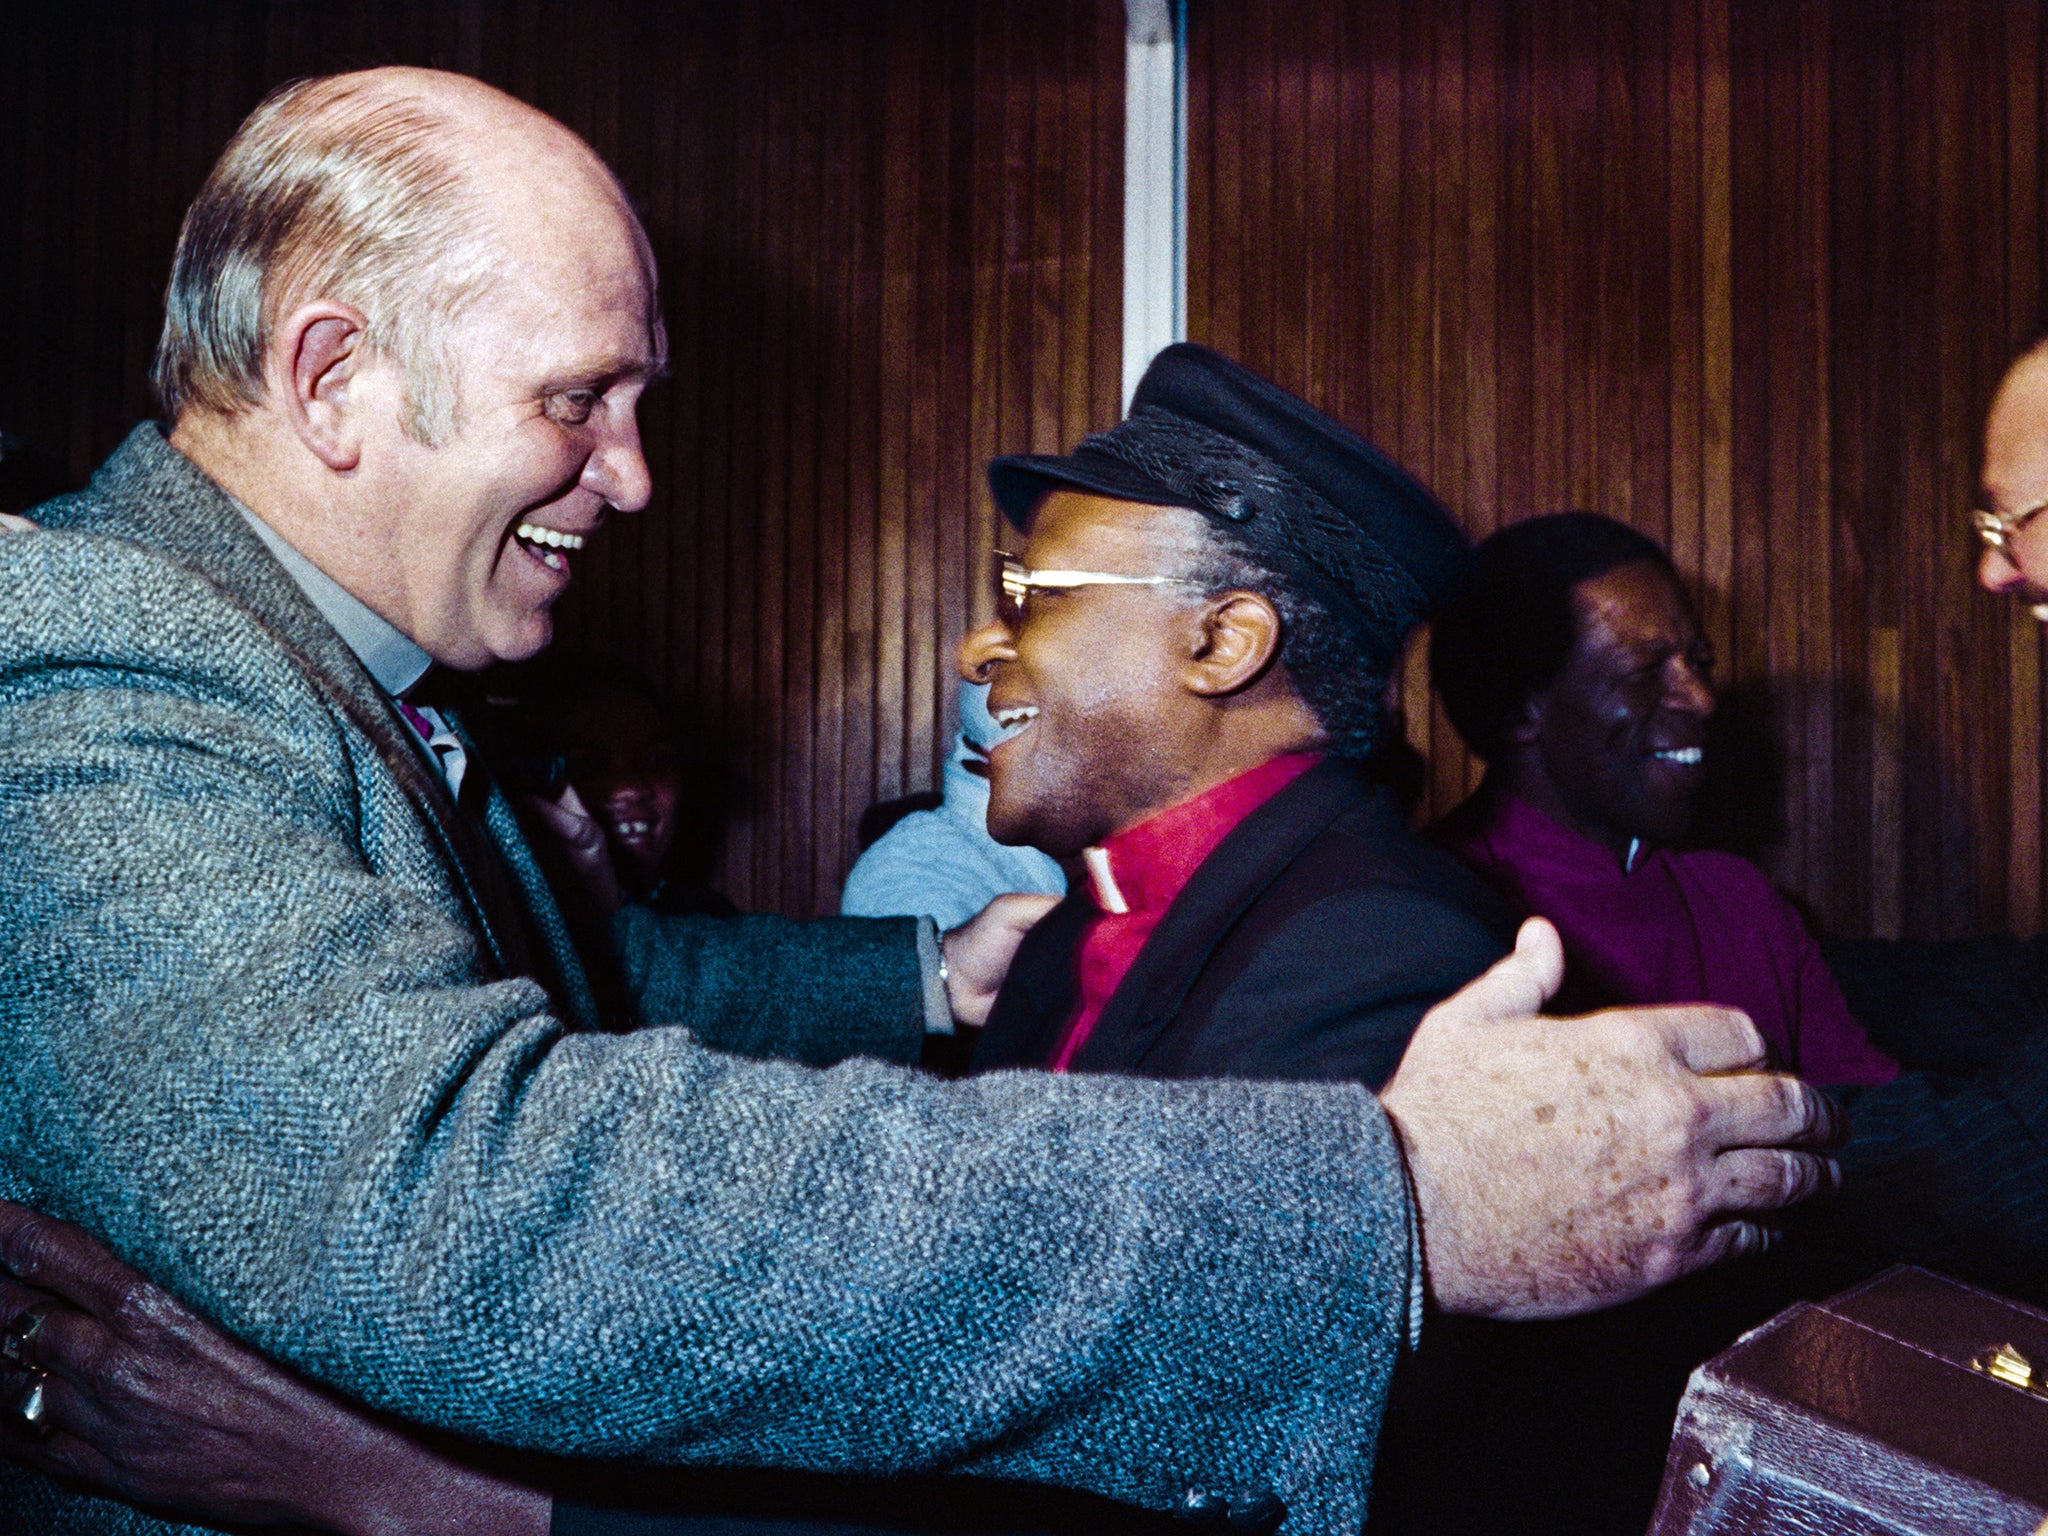 With Desmond Tutu in 1987